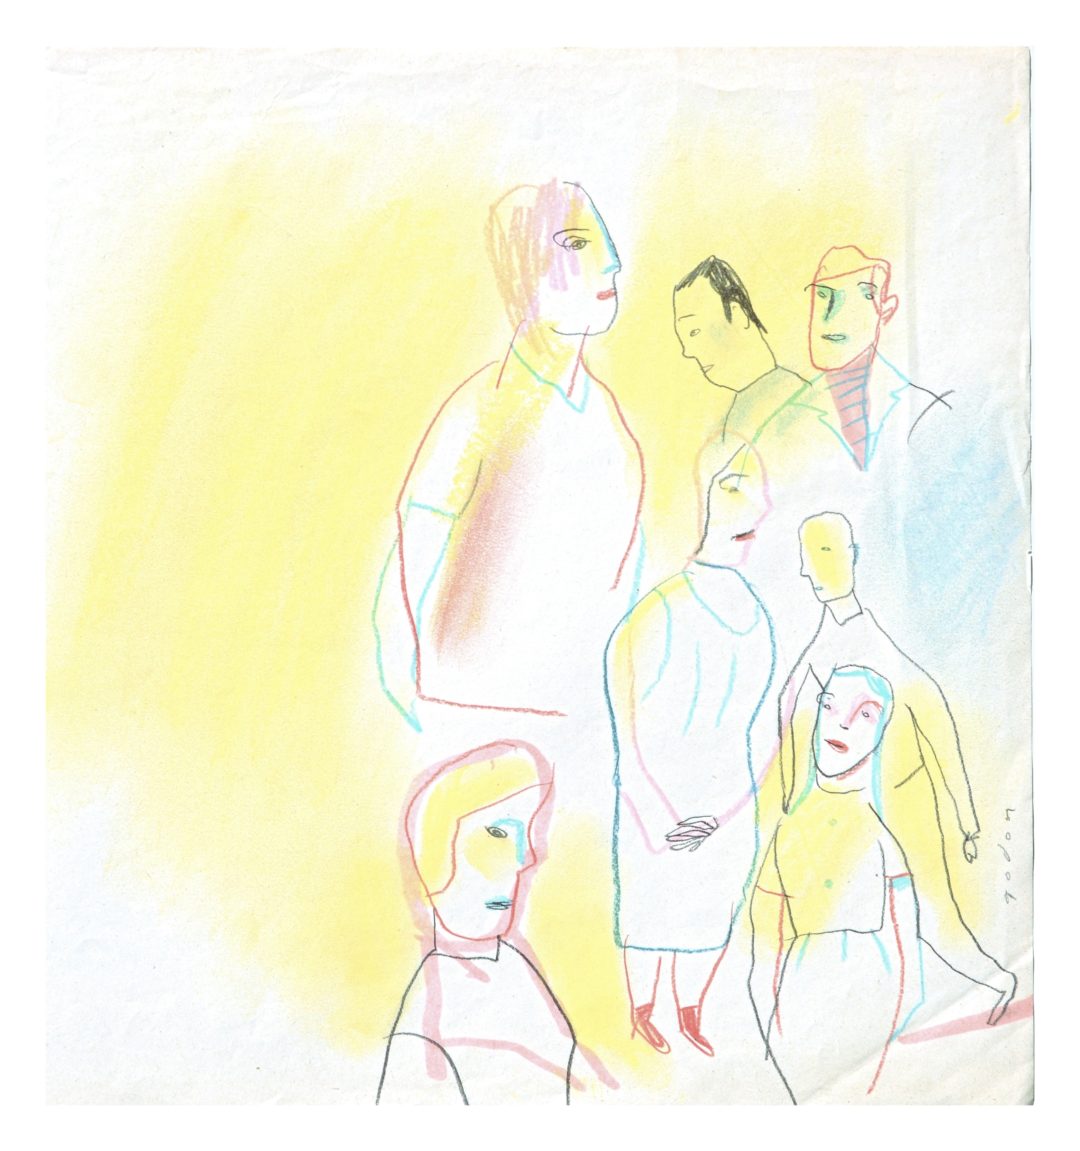 De wereld, origineel werk van Ingrid Godon bij online galerij ViViD Illustrations